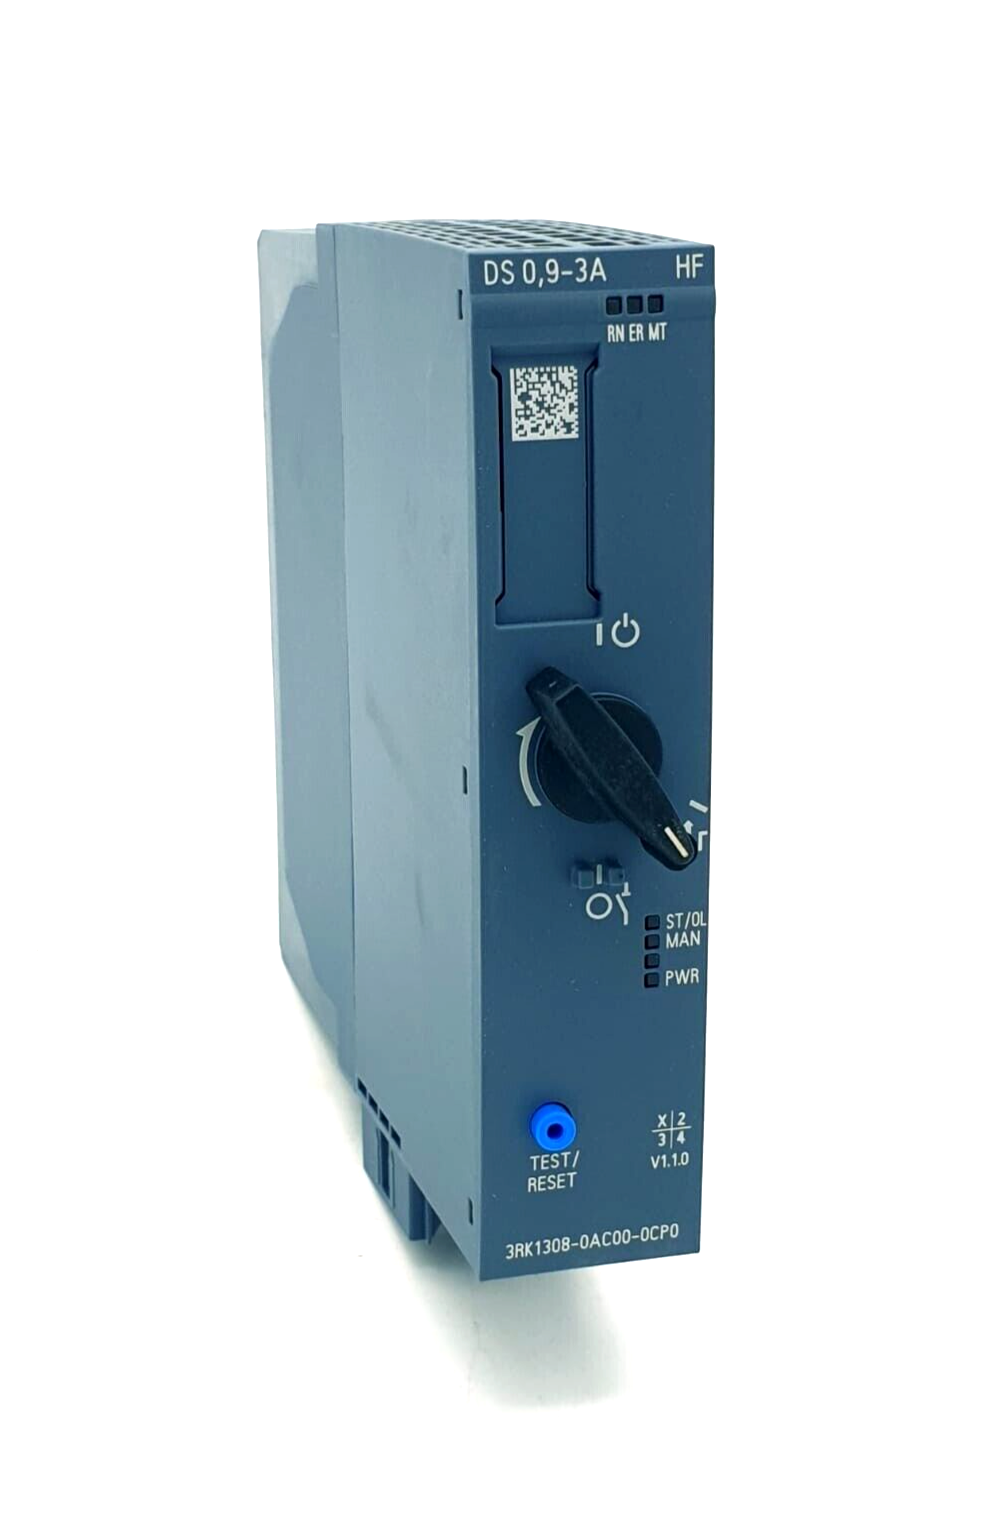 Siemens 3RK1308-0AC00-0CP0, Direktstarter High Feature, 400V, 0,9 .. 3A